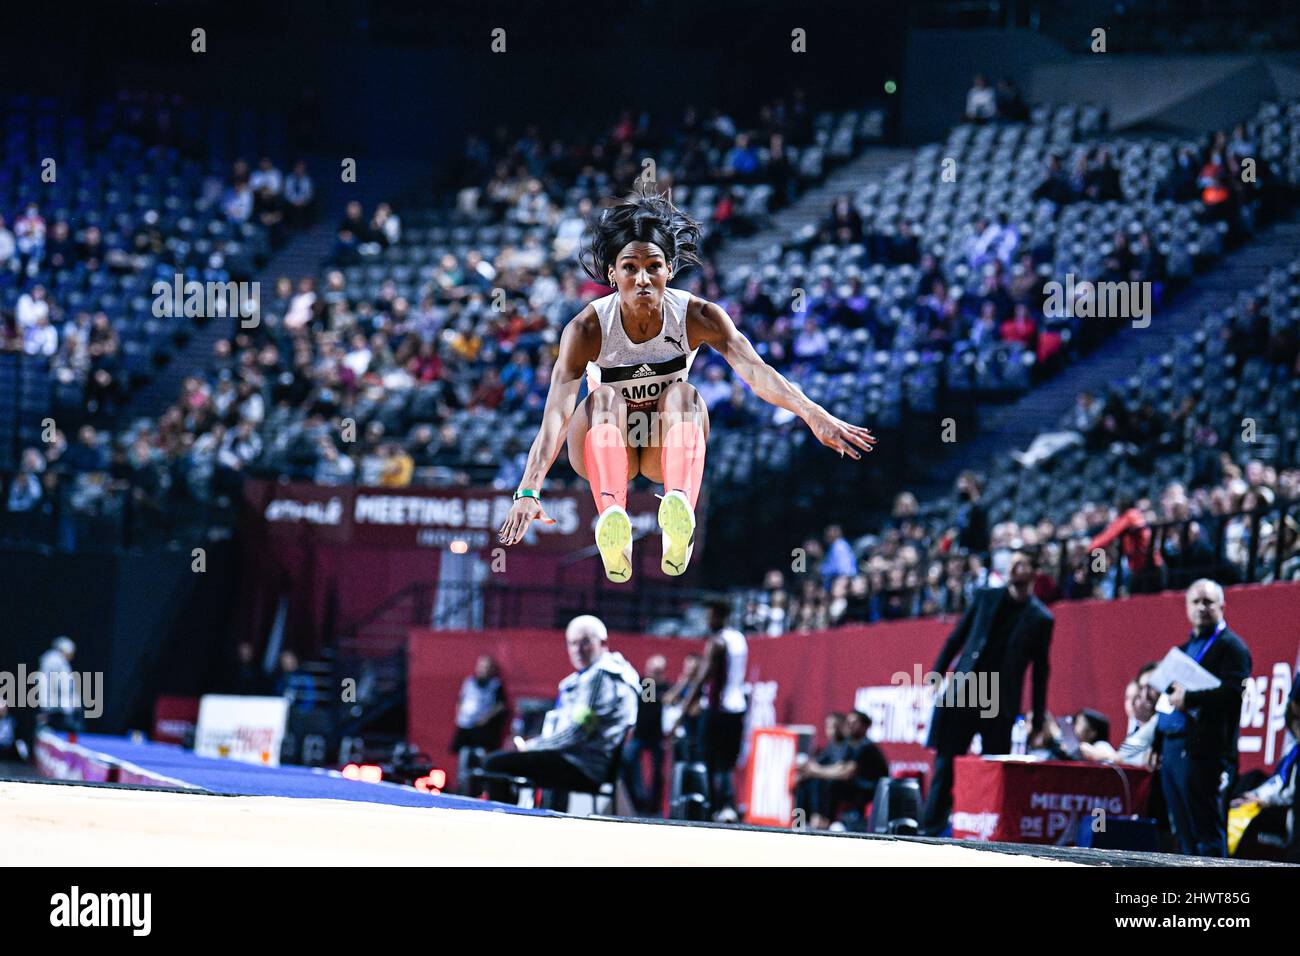 Patricia Mamona aus Portugal (Triple Jump der Frauen) tritt während der World Athletics Indoor Tour, Meeting de Paris 2022 am 6. März 2022 in der Accor Arena in Paris, Frankreich, an. Stockfoto